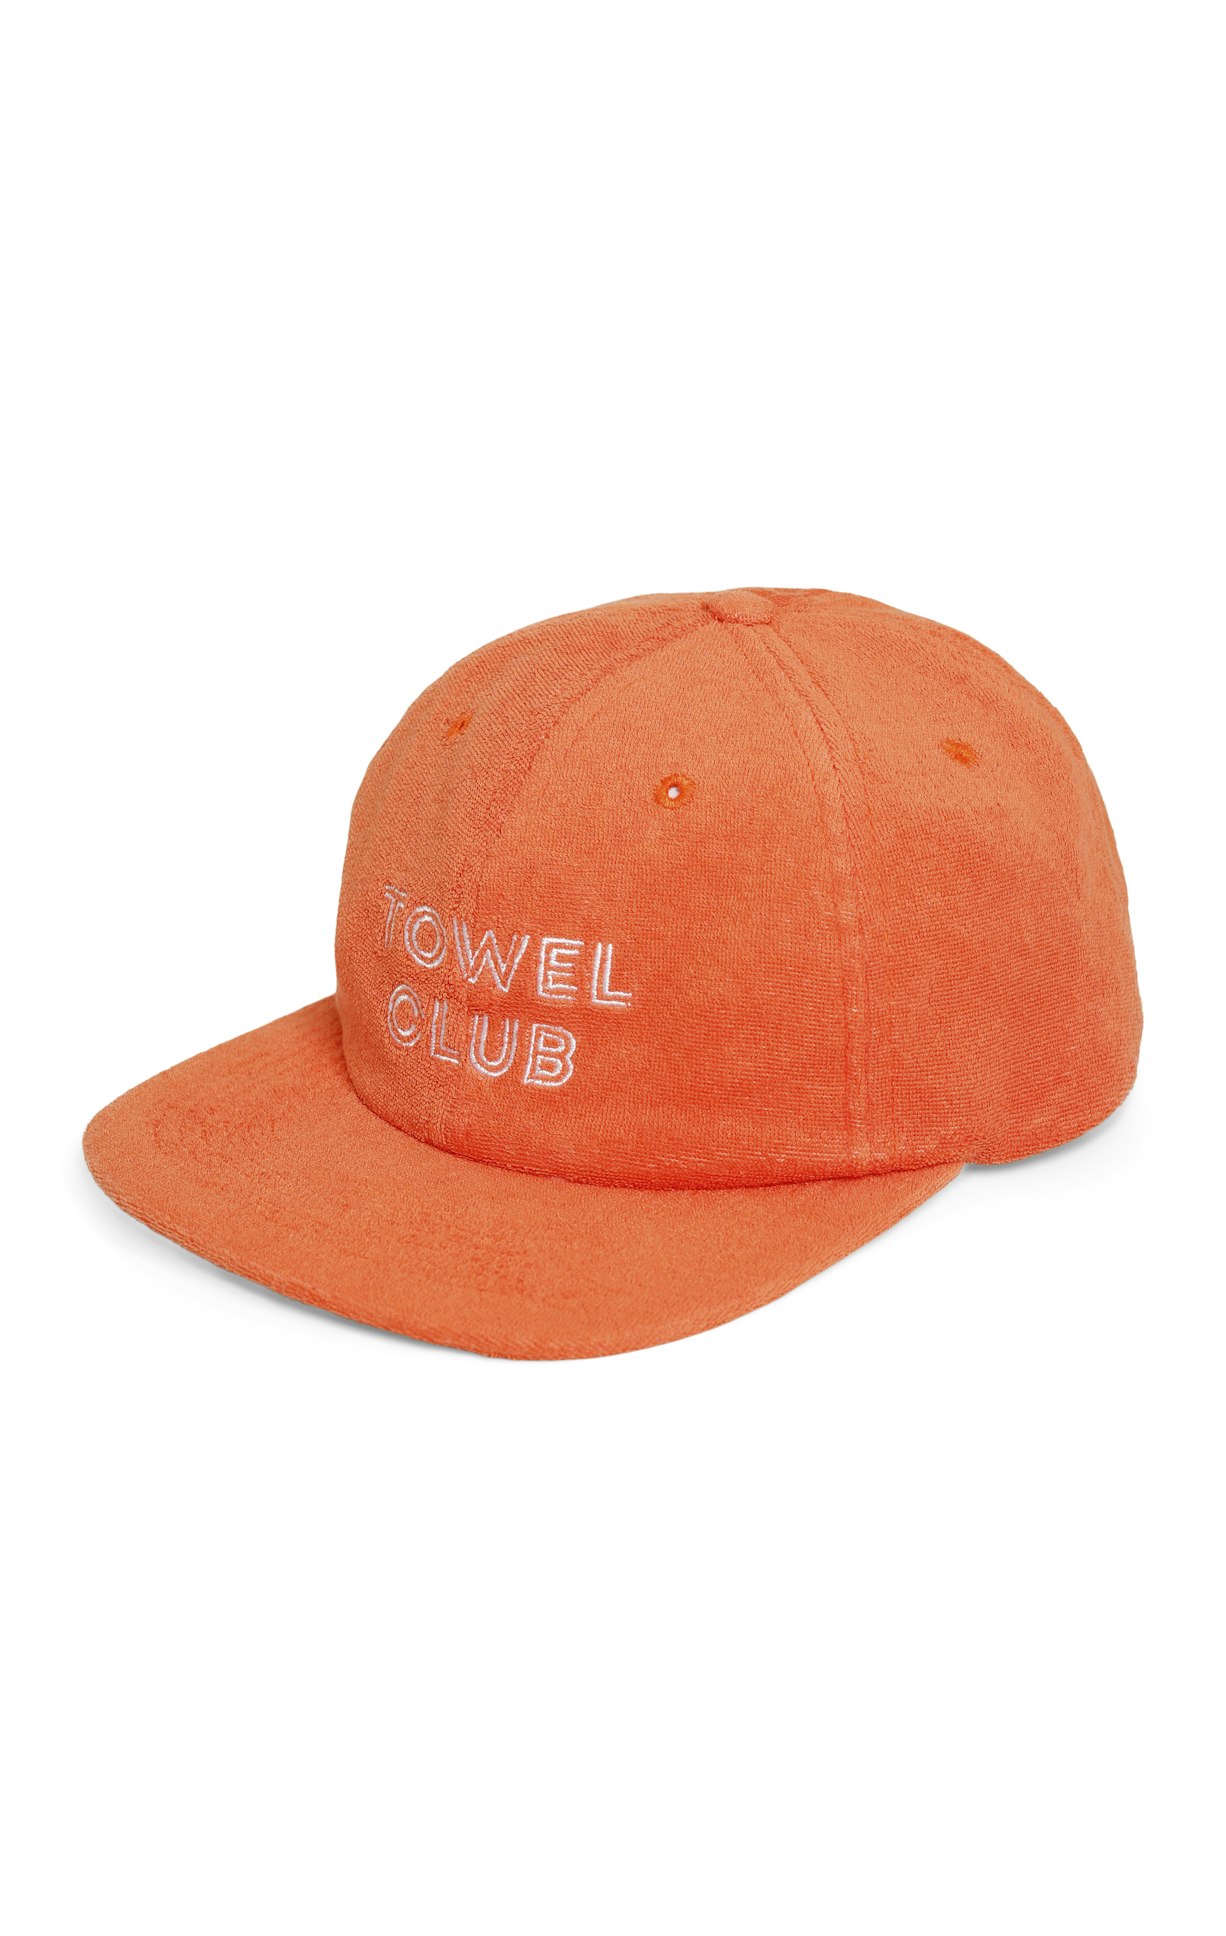 Towel Club Cap Orange